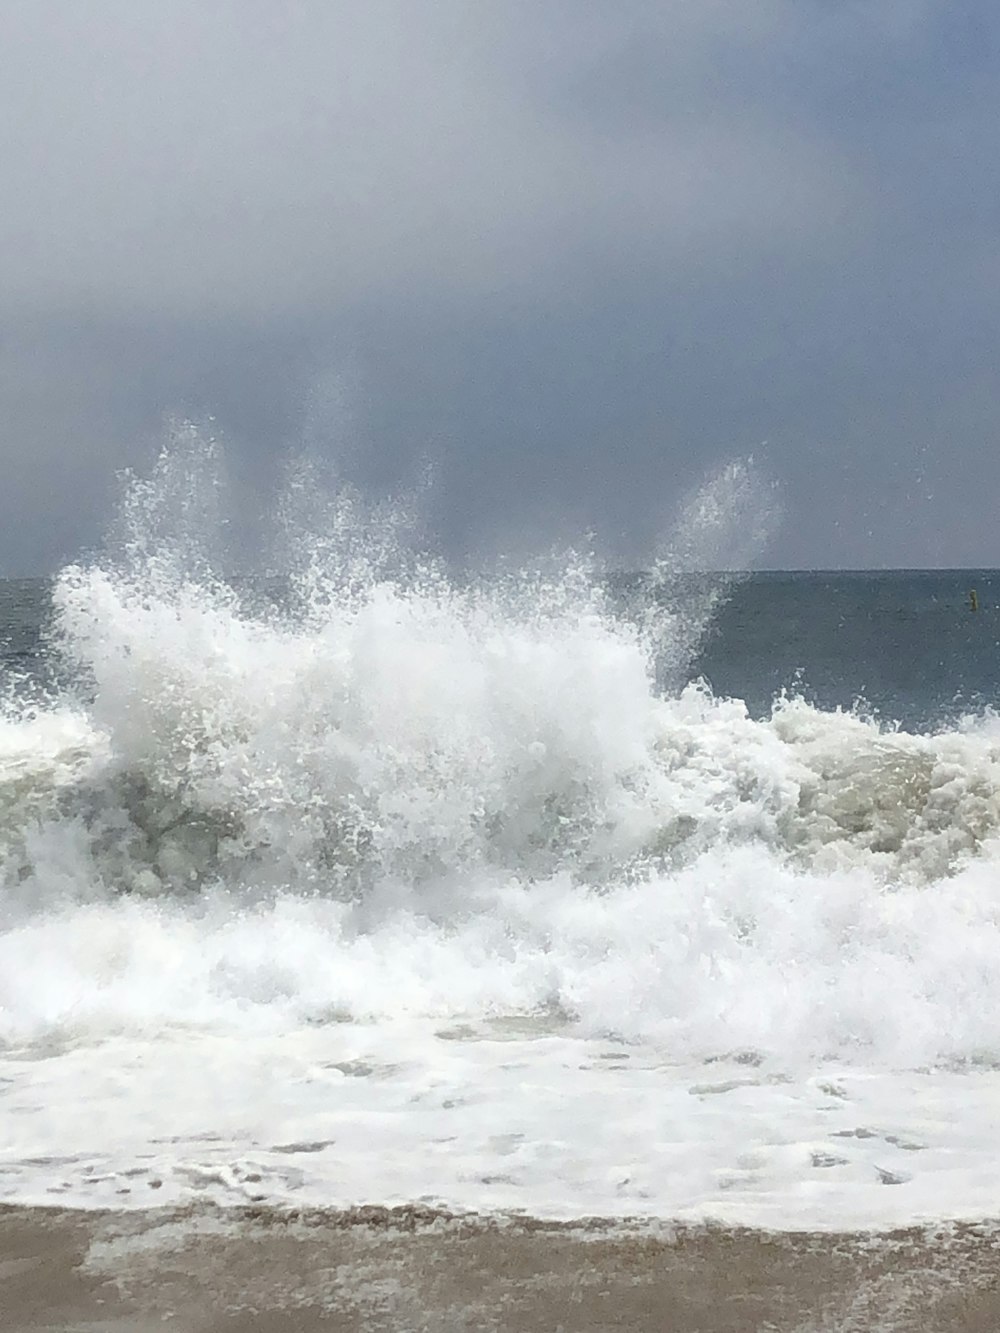 sea wave splashing on shore during daytime